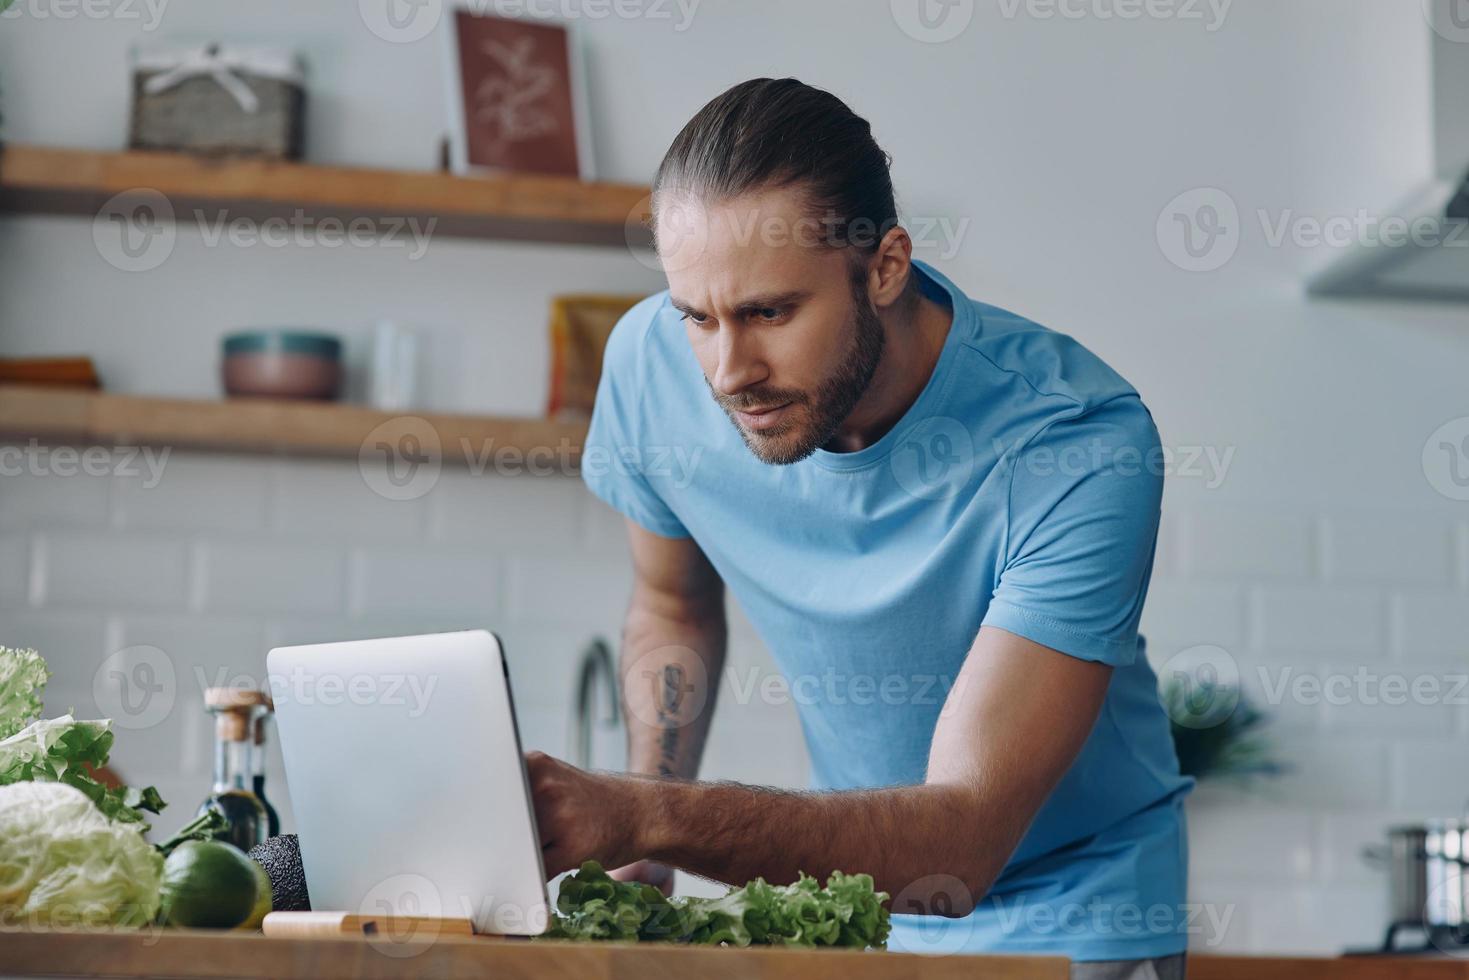 jovem bonito usando tablet digital enquanto prepara comida na cozinha doméstica foto